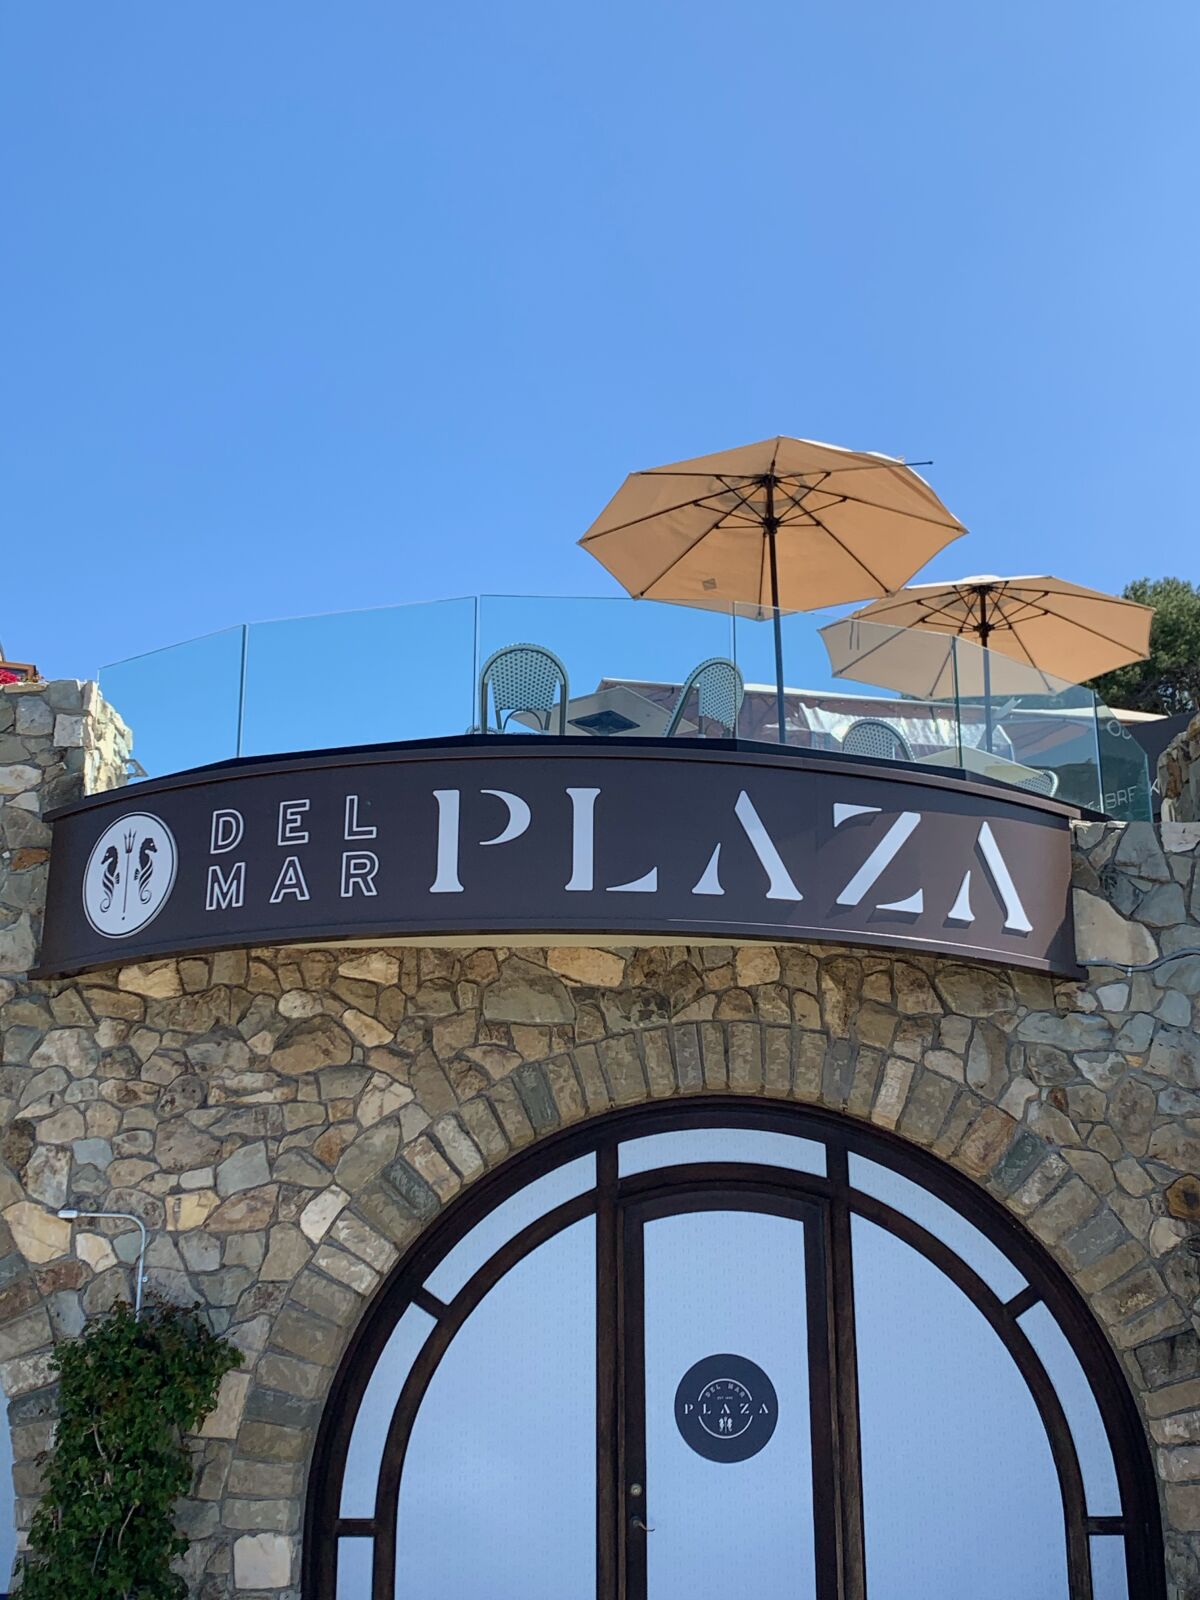 Del Mar Plaza shopping center is located at 1555 Camino Del Mar in the Del Mar Village area.